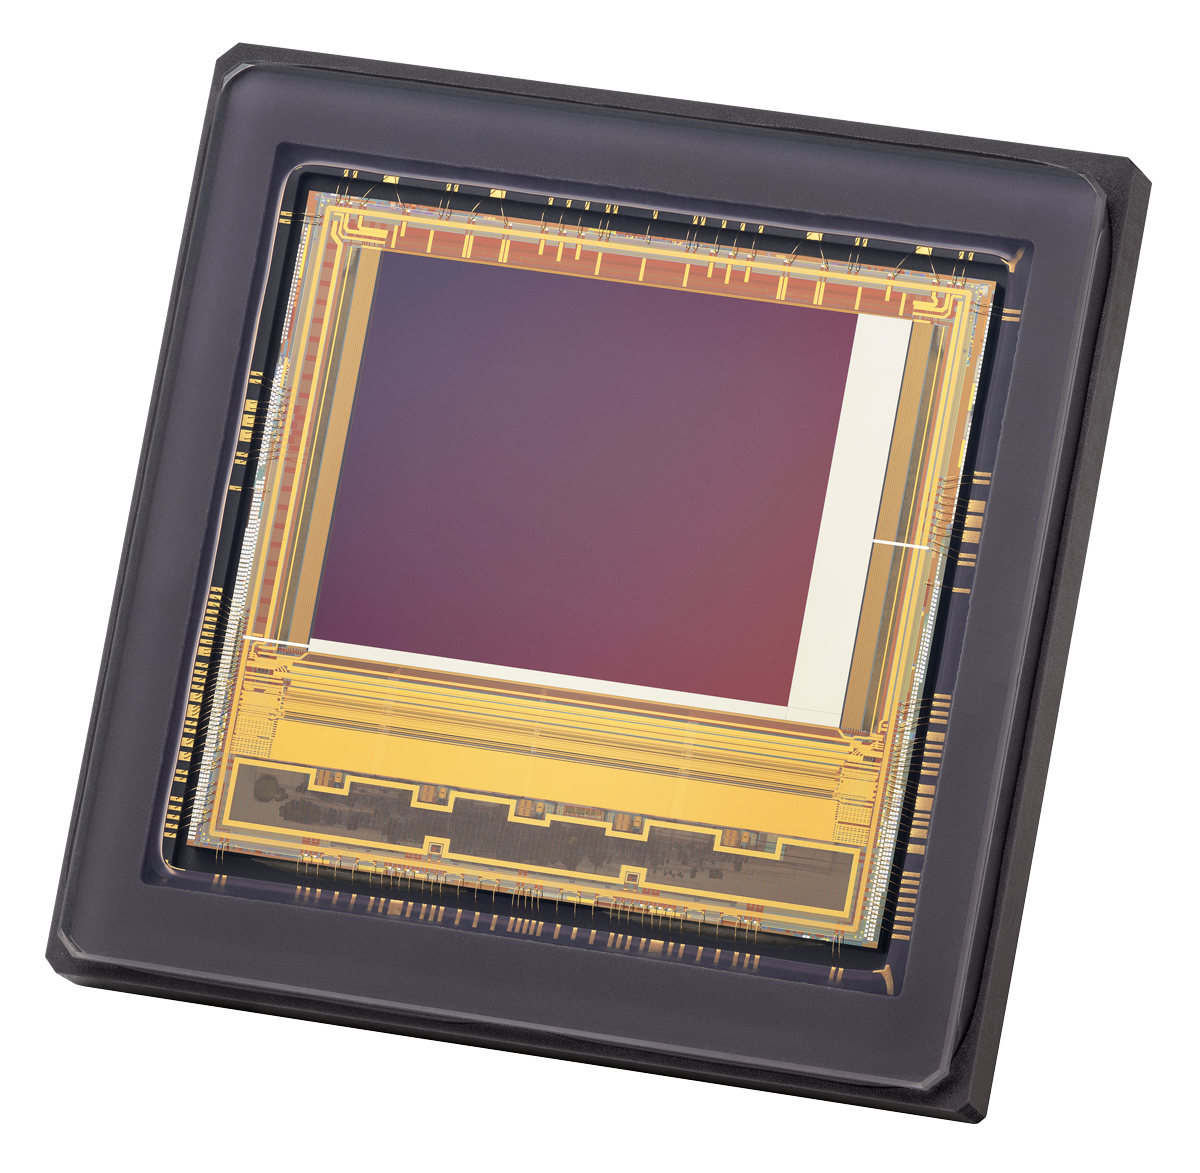 Teledyne e2v 宣佈推出下一代低照度 CMOS 感測器 